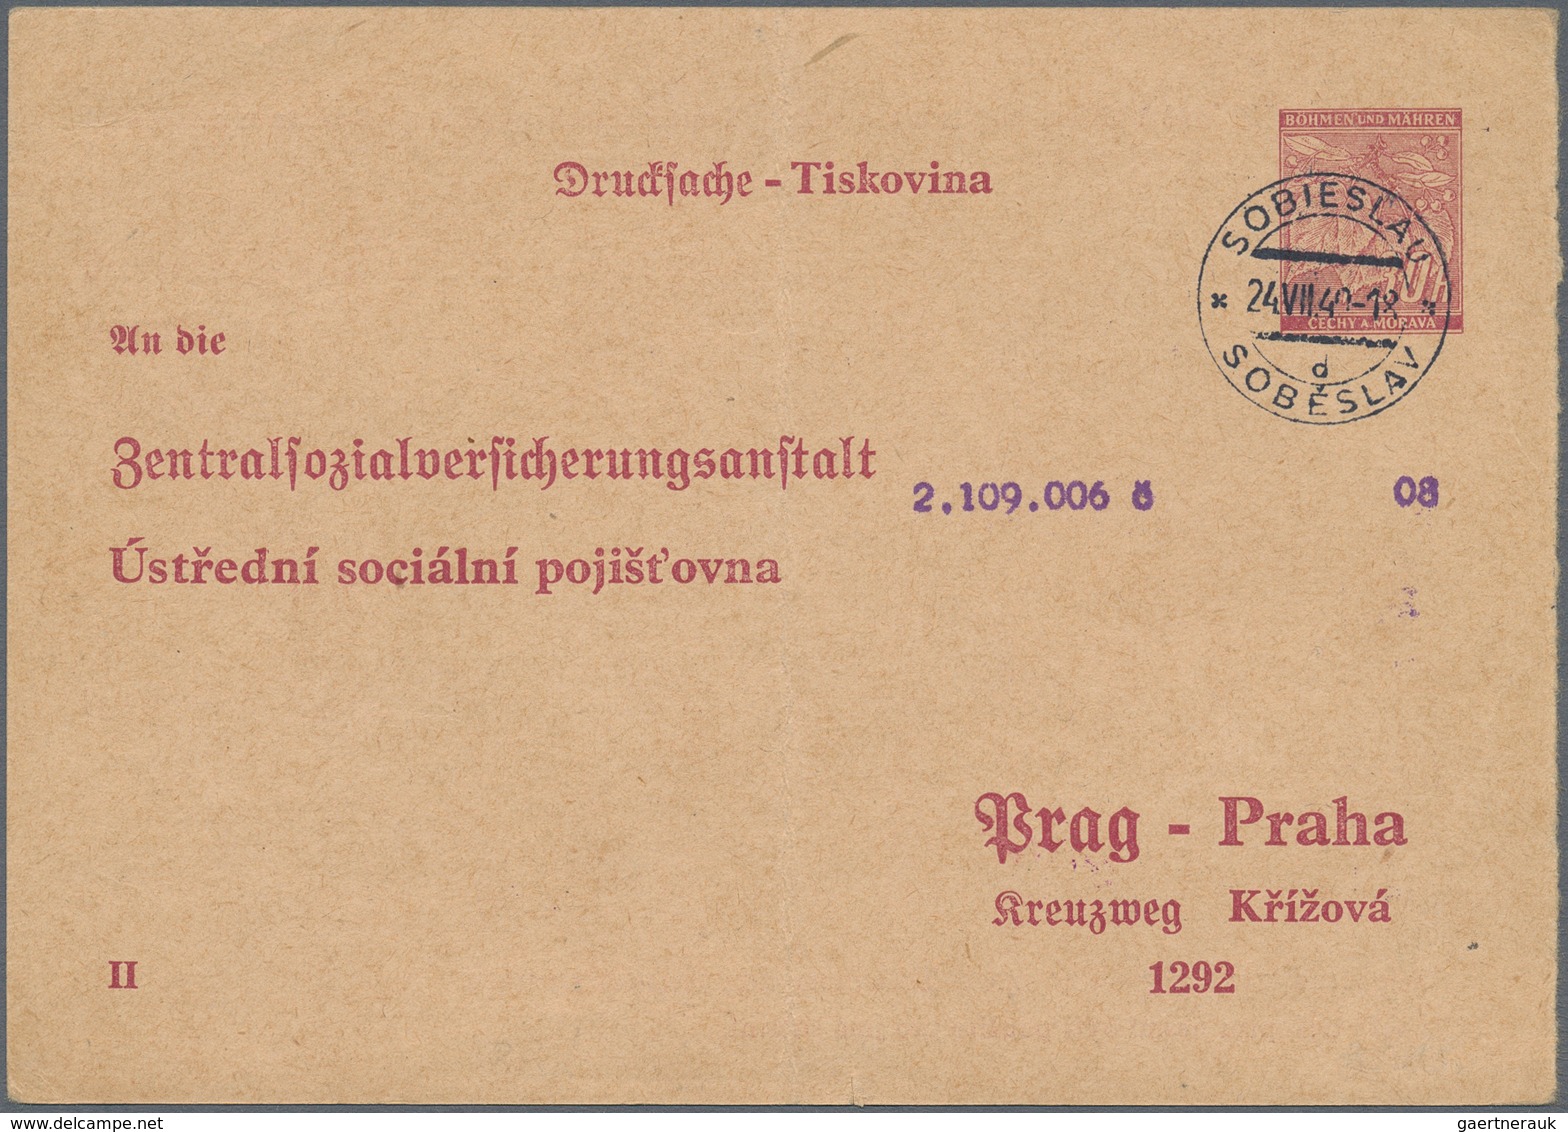 Deutsche Besetzung II. WK: 1939/1945, Partie von über 80 Briefen und Karten, dabei Böhmen und Mähren